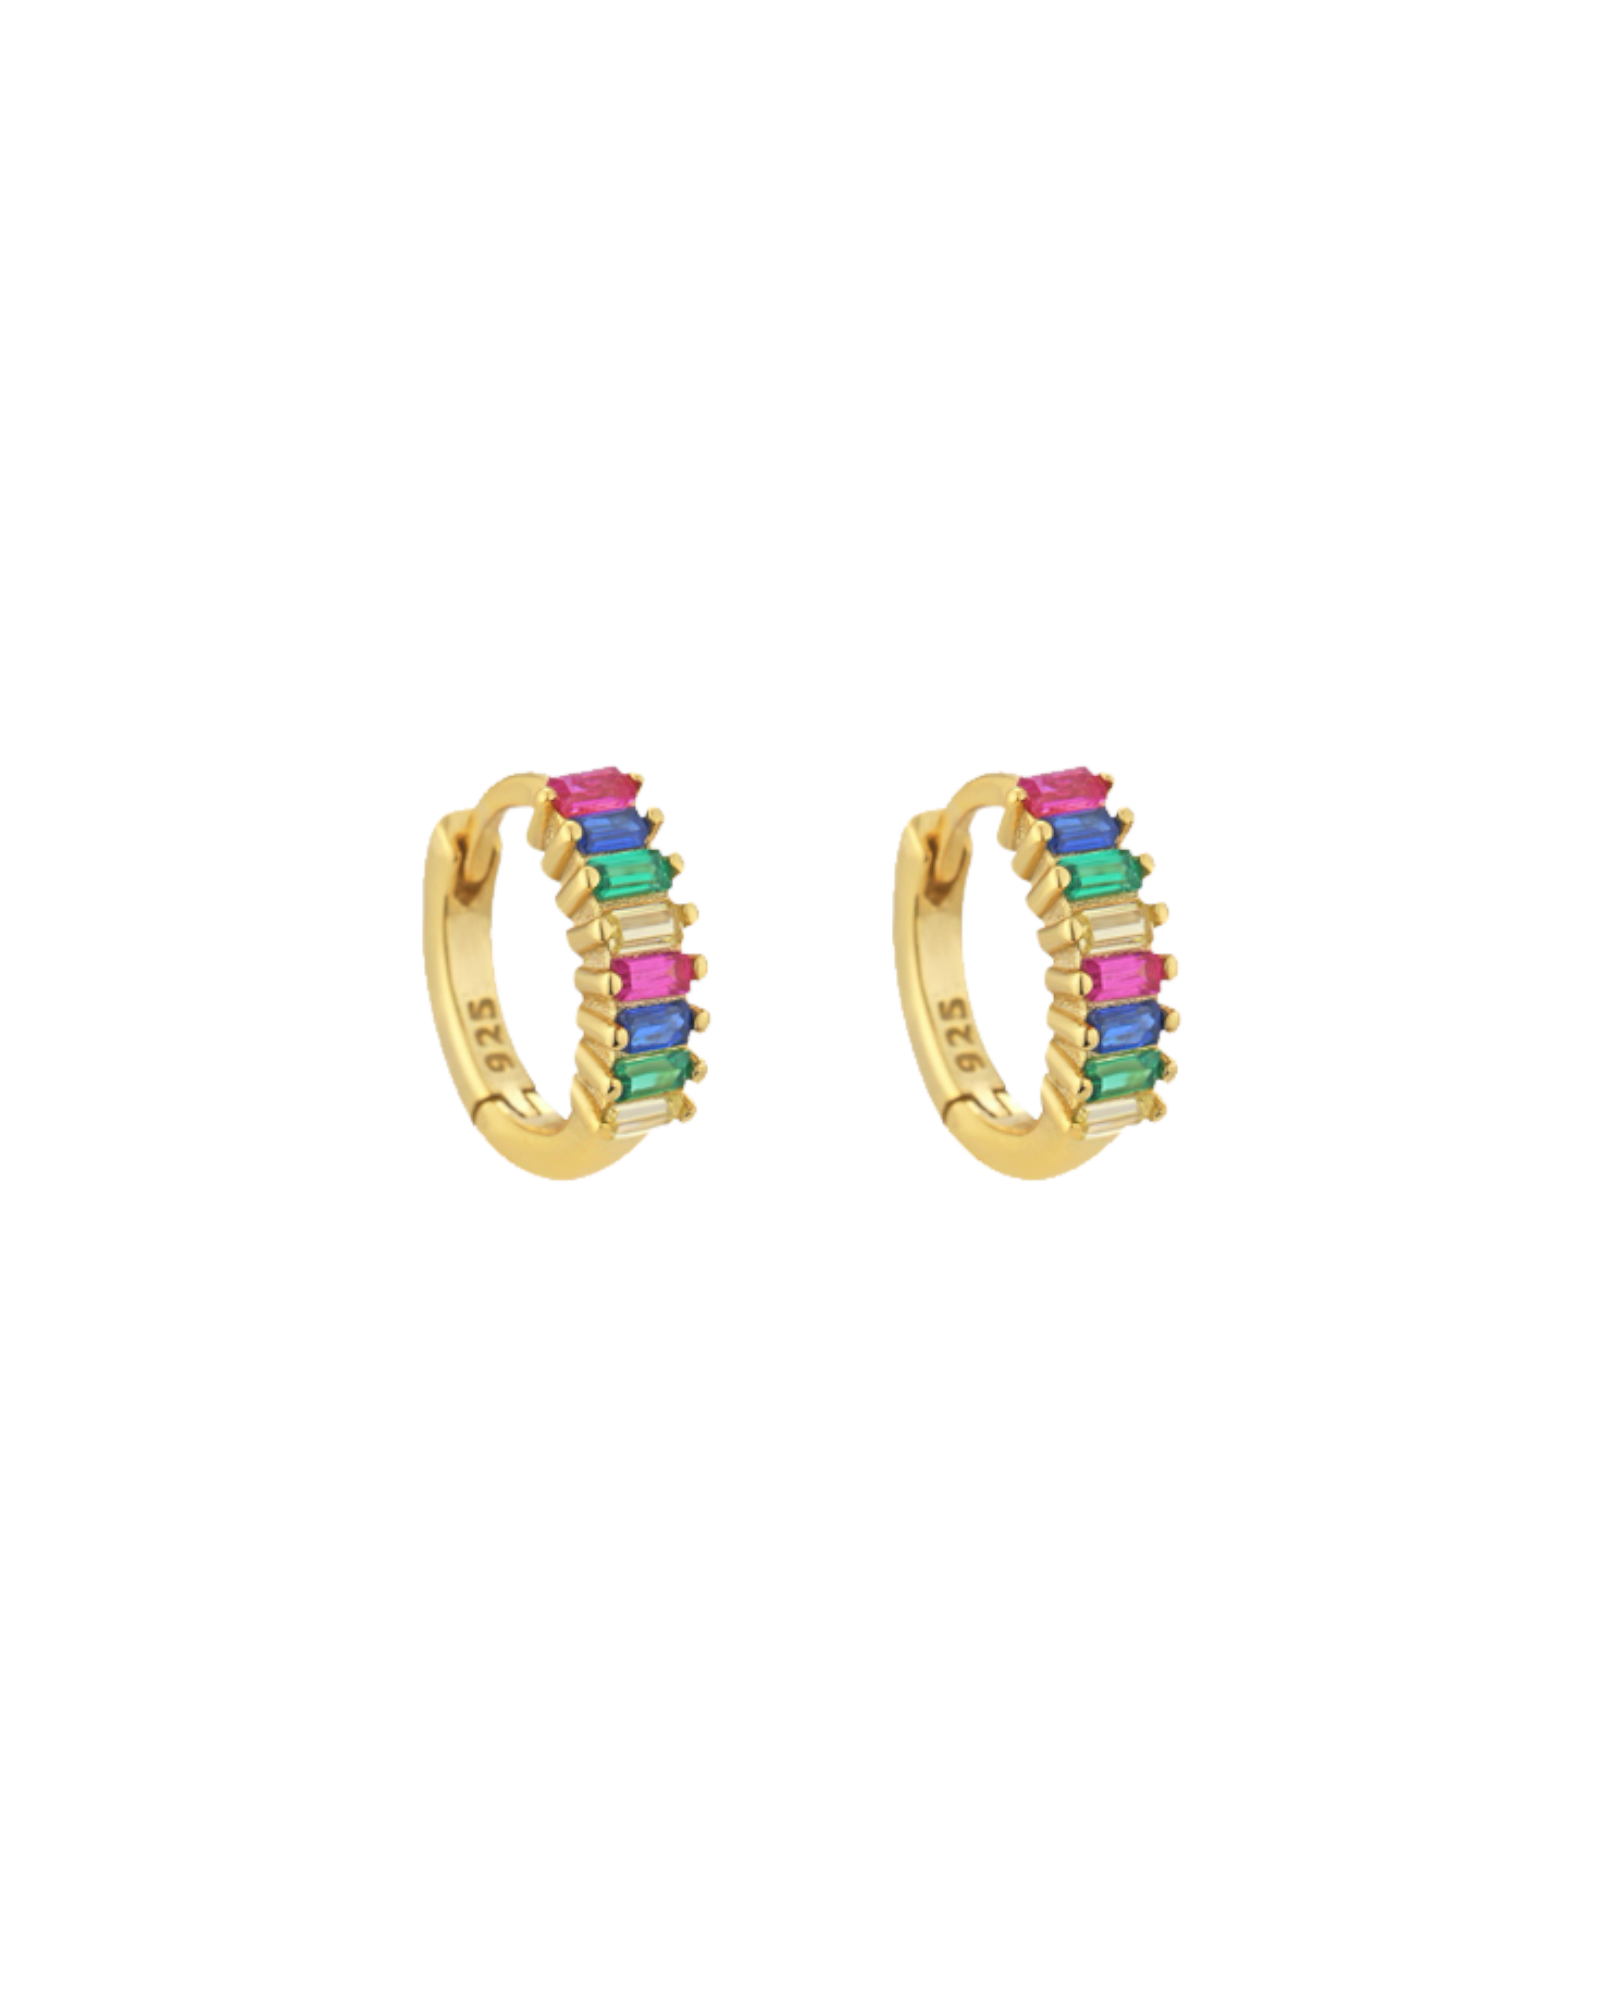 彩虹密鑲方晶鋯石好奇圈形耳環